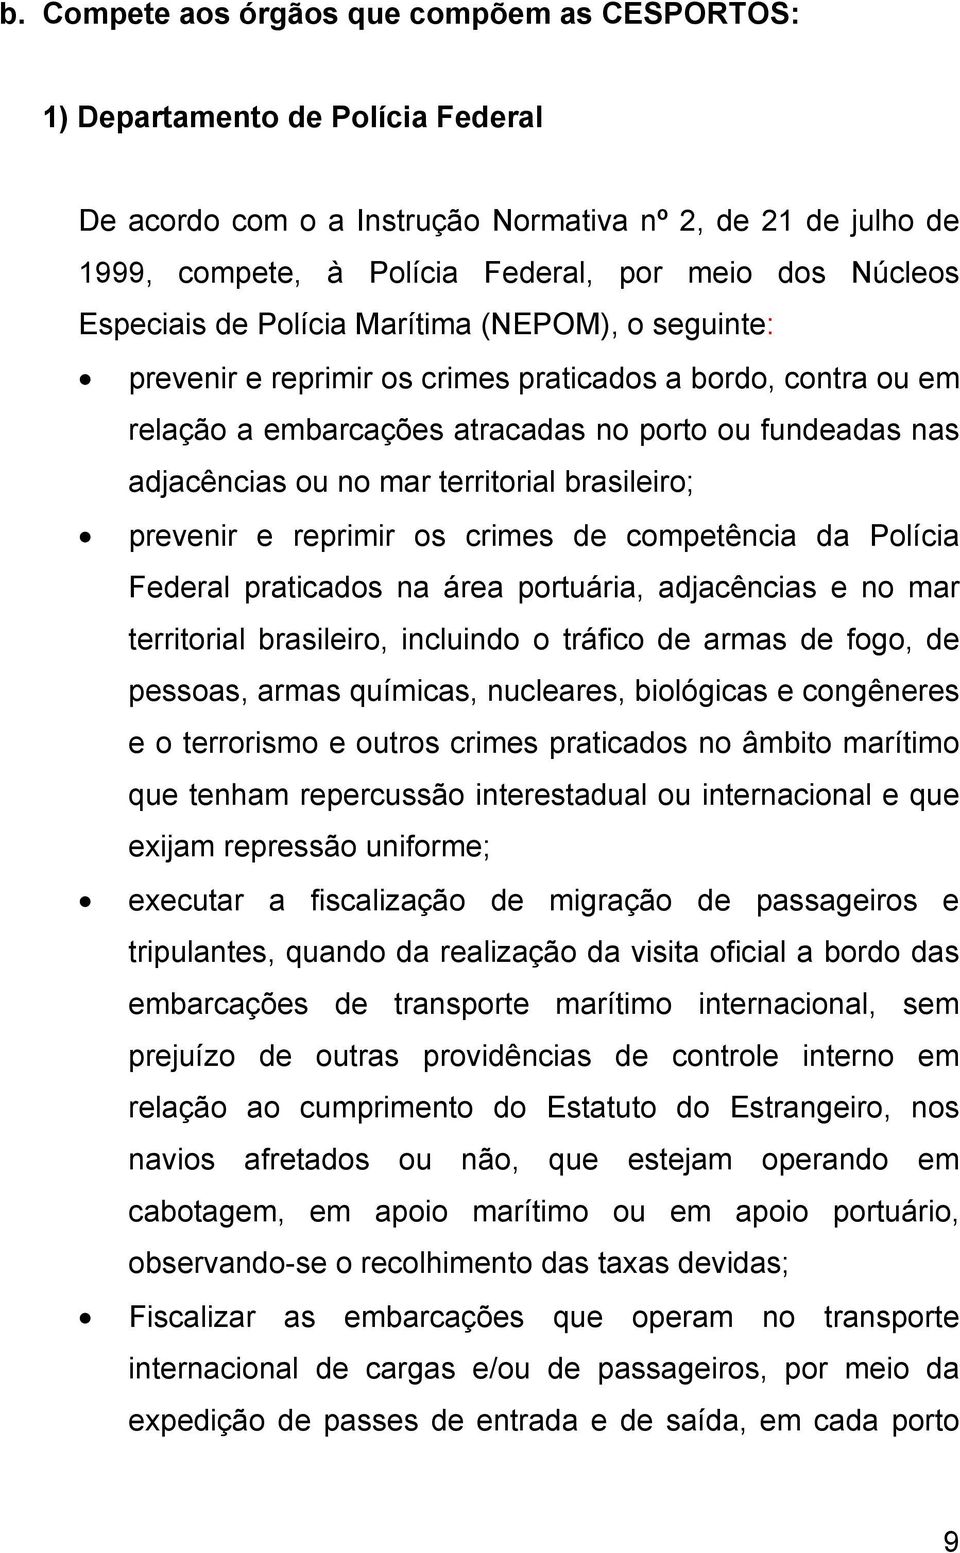 territorial brasileiro; prevenir e reprimir os crimes de competência da Polícia Federal praticados na área portuária, adjacências e no mar territorial brasileiro, incluindo o tráfico de armas de